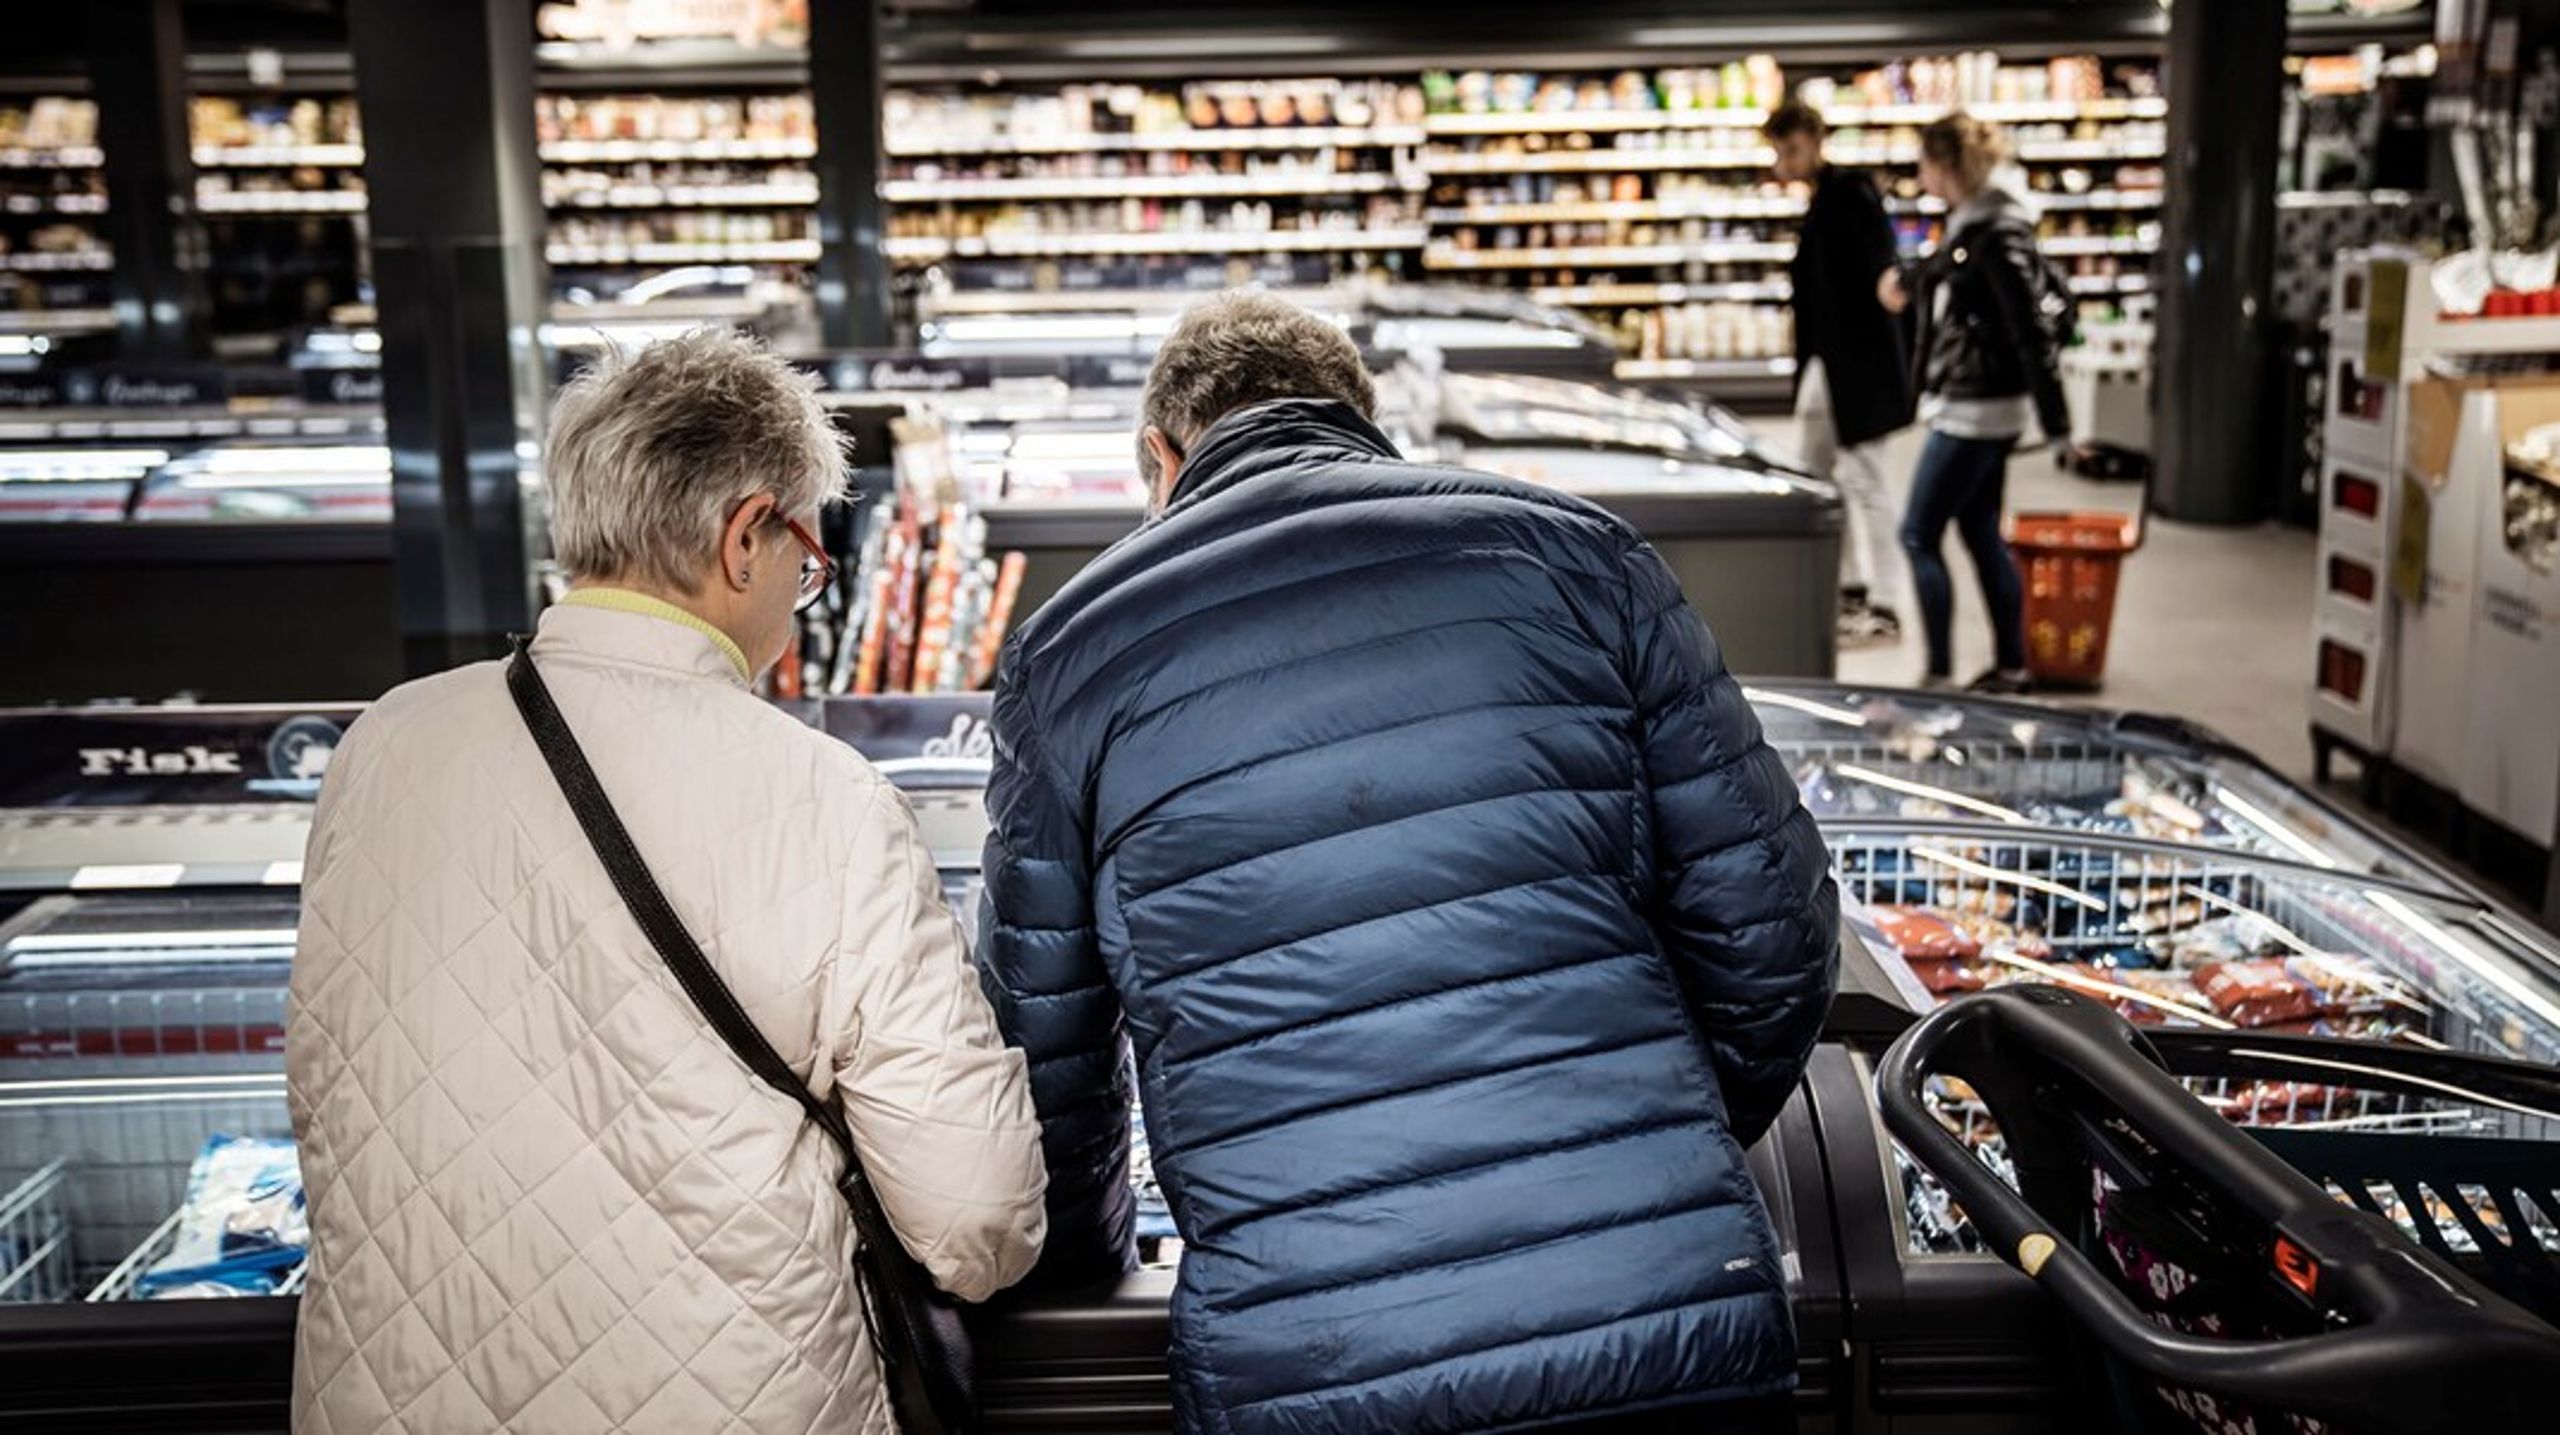 De danske forbrugere får snart hjælp ved køledisken til at handle mere klimavenligt. Ifølge en undersøgelse foretrækker de især én bestemt mærkningsmodel.